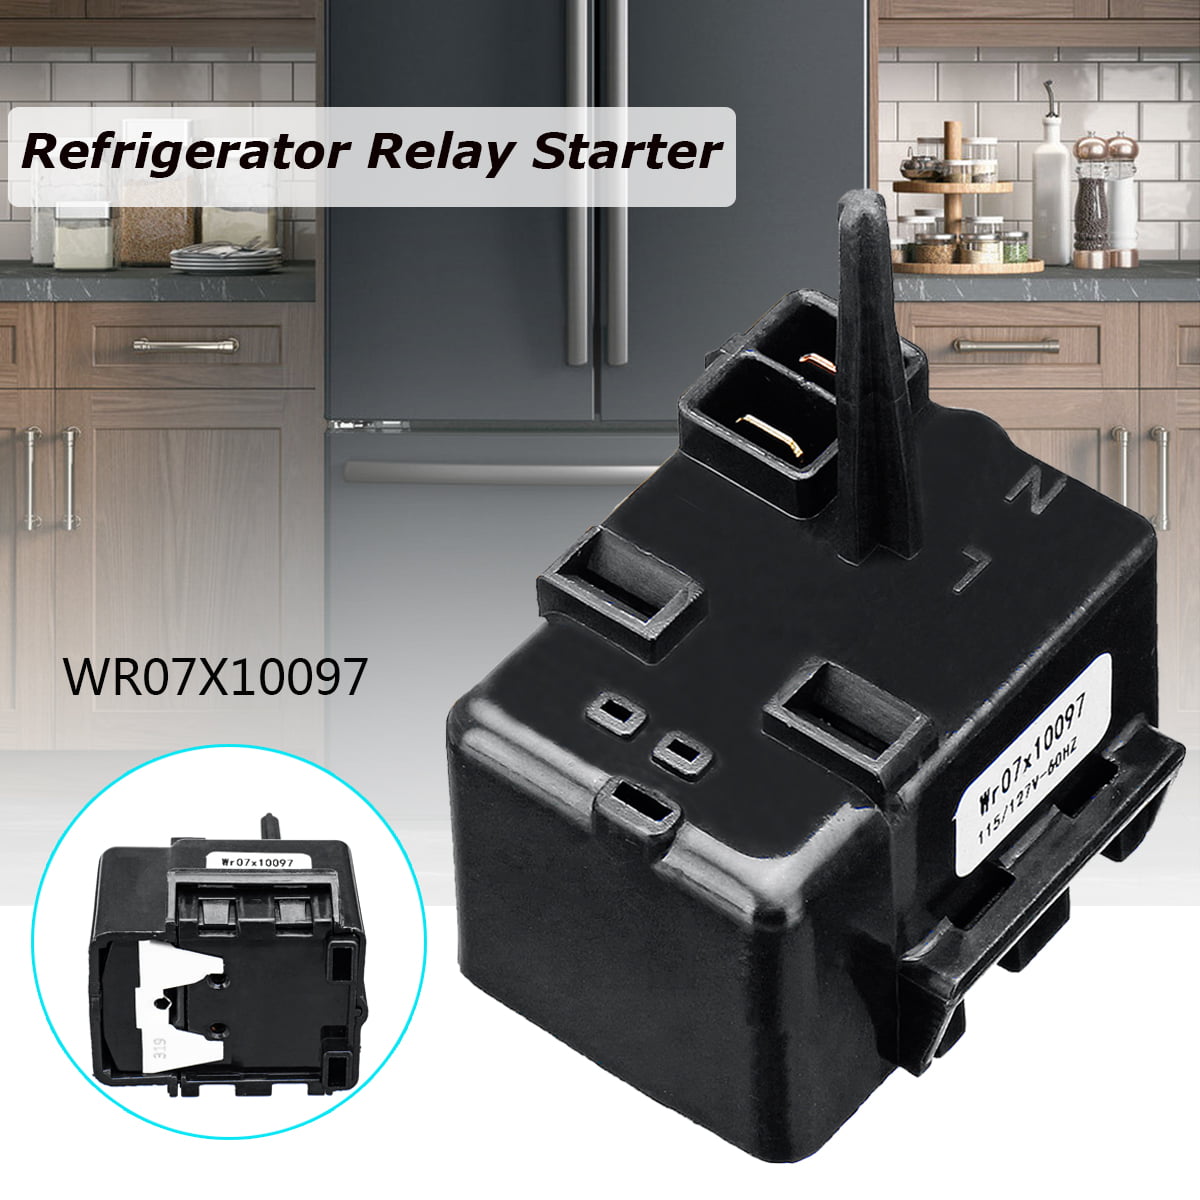 Refrigerator Compressor Relay Overload Starter Kit For GE WR07X10097 513604045 